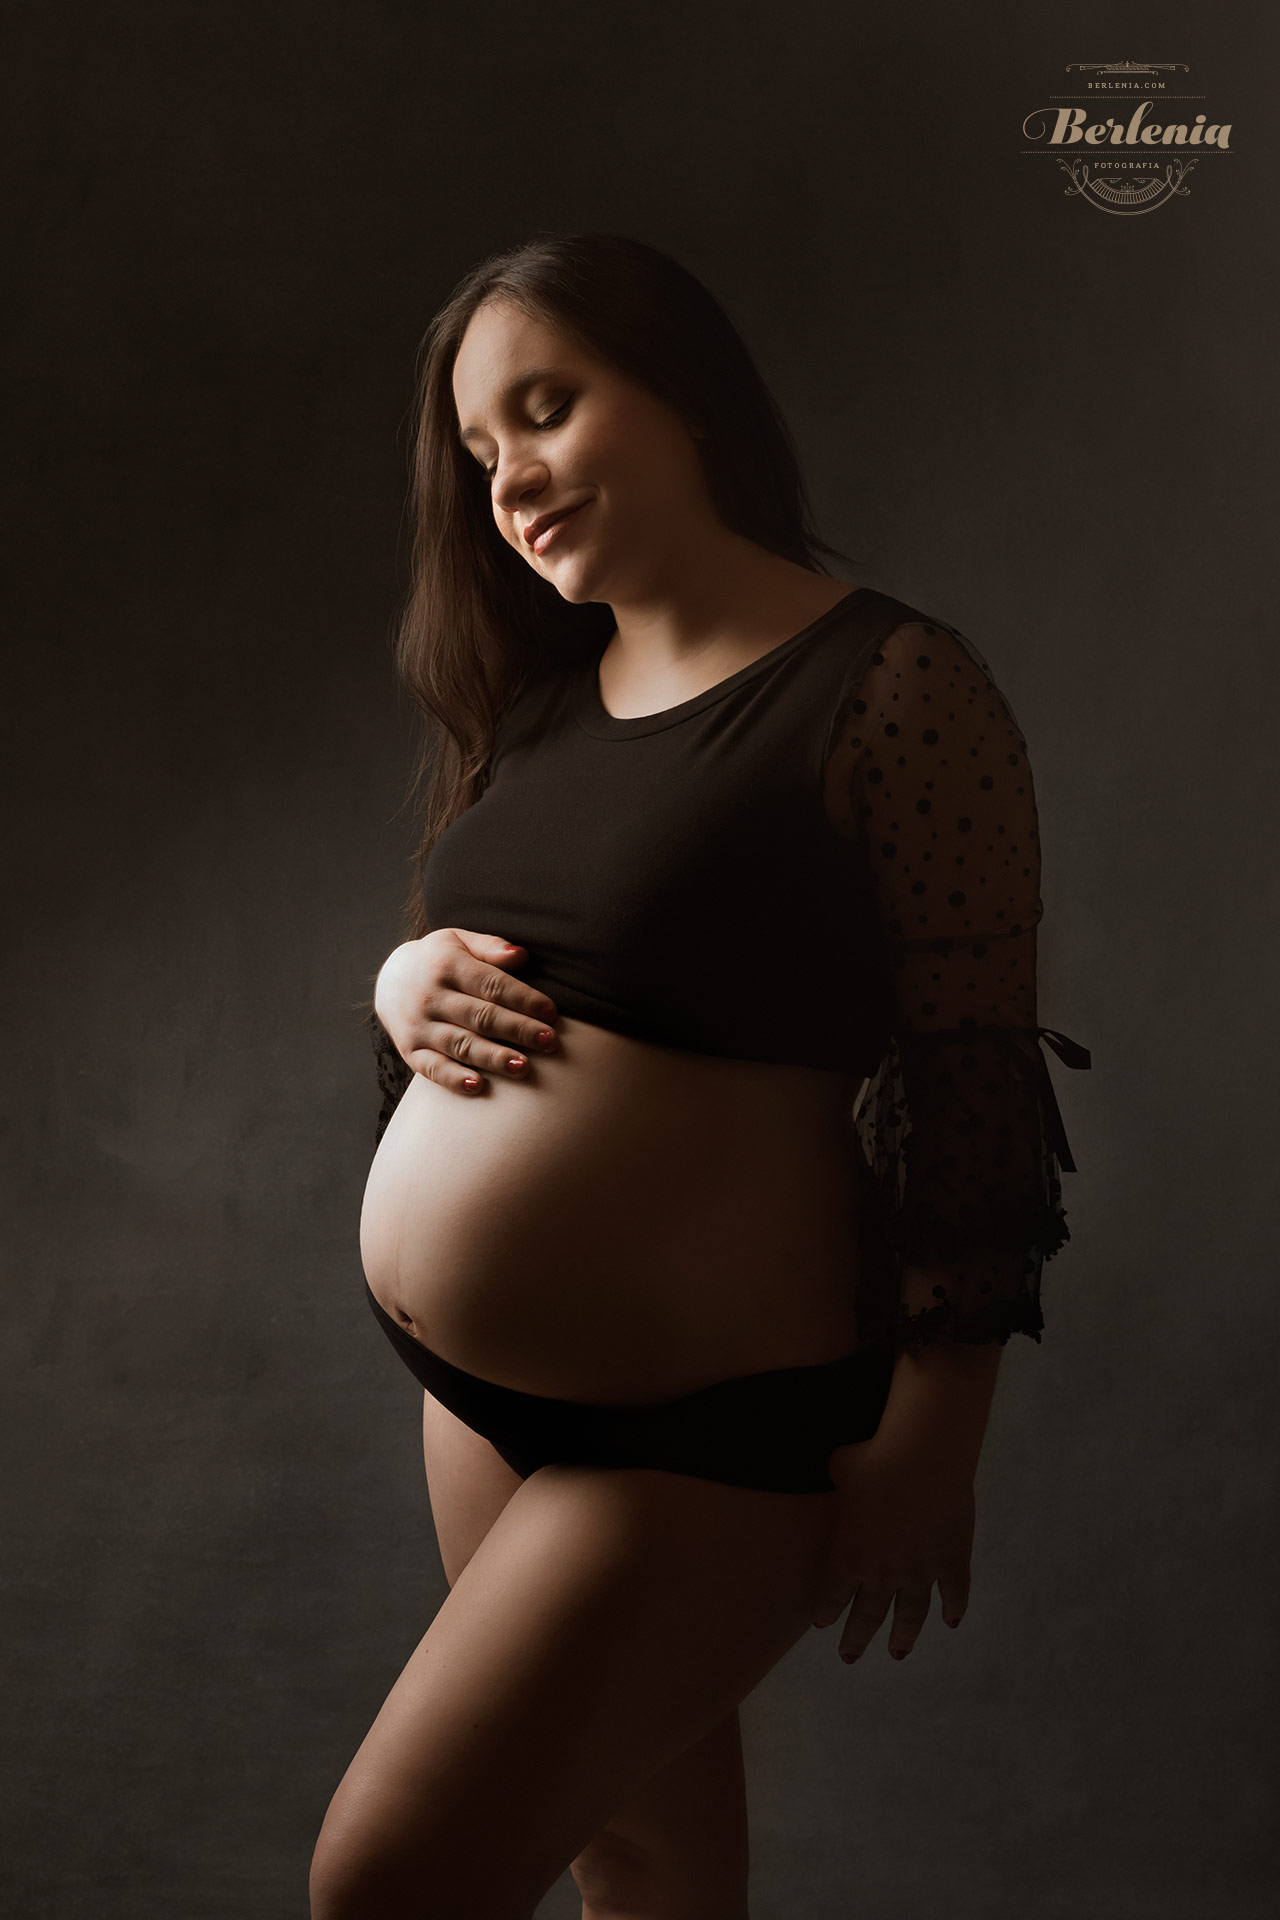 Fotografía de embarazo en estudio con pareja - Sesión de fotos embarazada - Villa Urquiza, CABA, Buenos Aires, Argentina - Berlenia Fotografía - 03